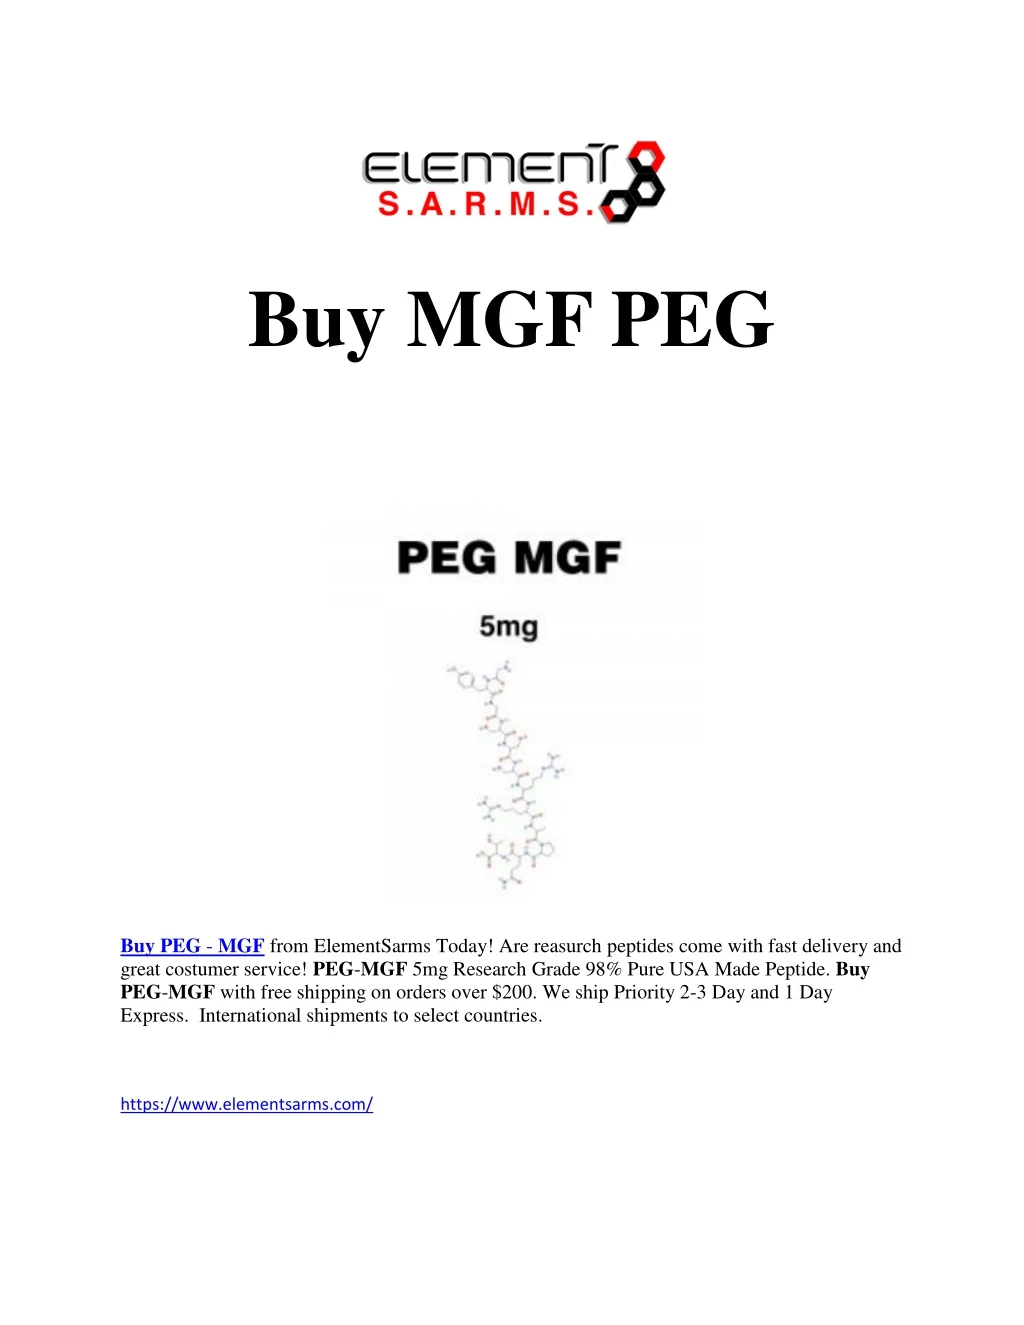 buy mgf peg